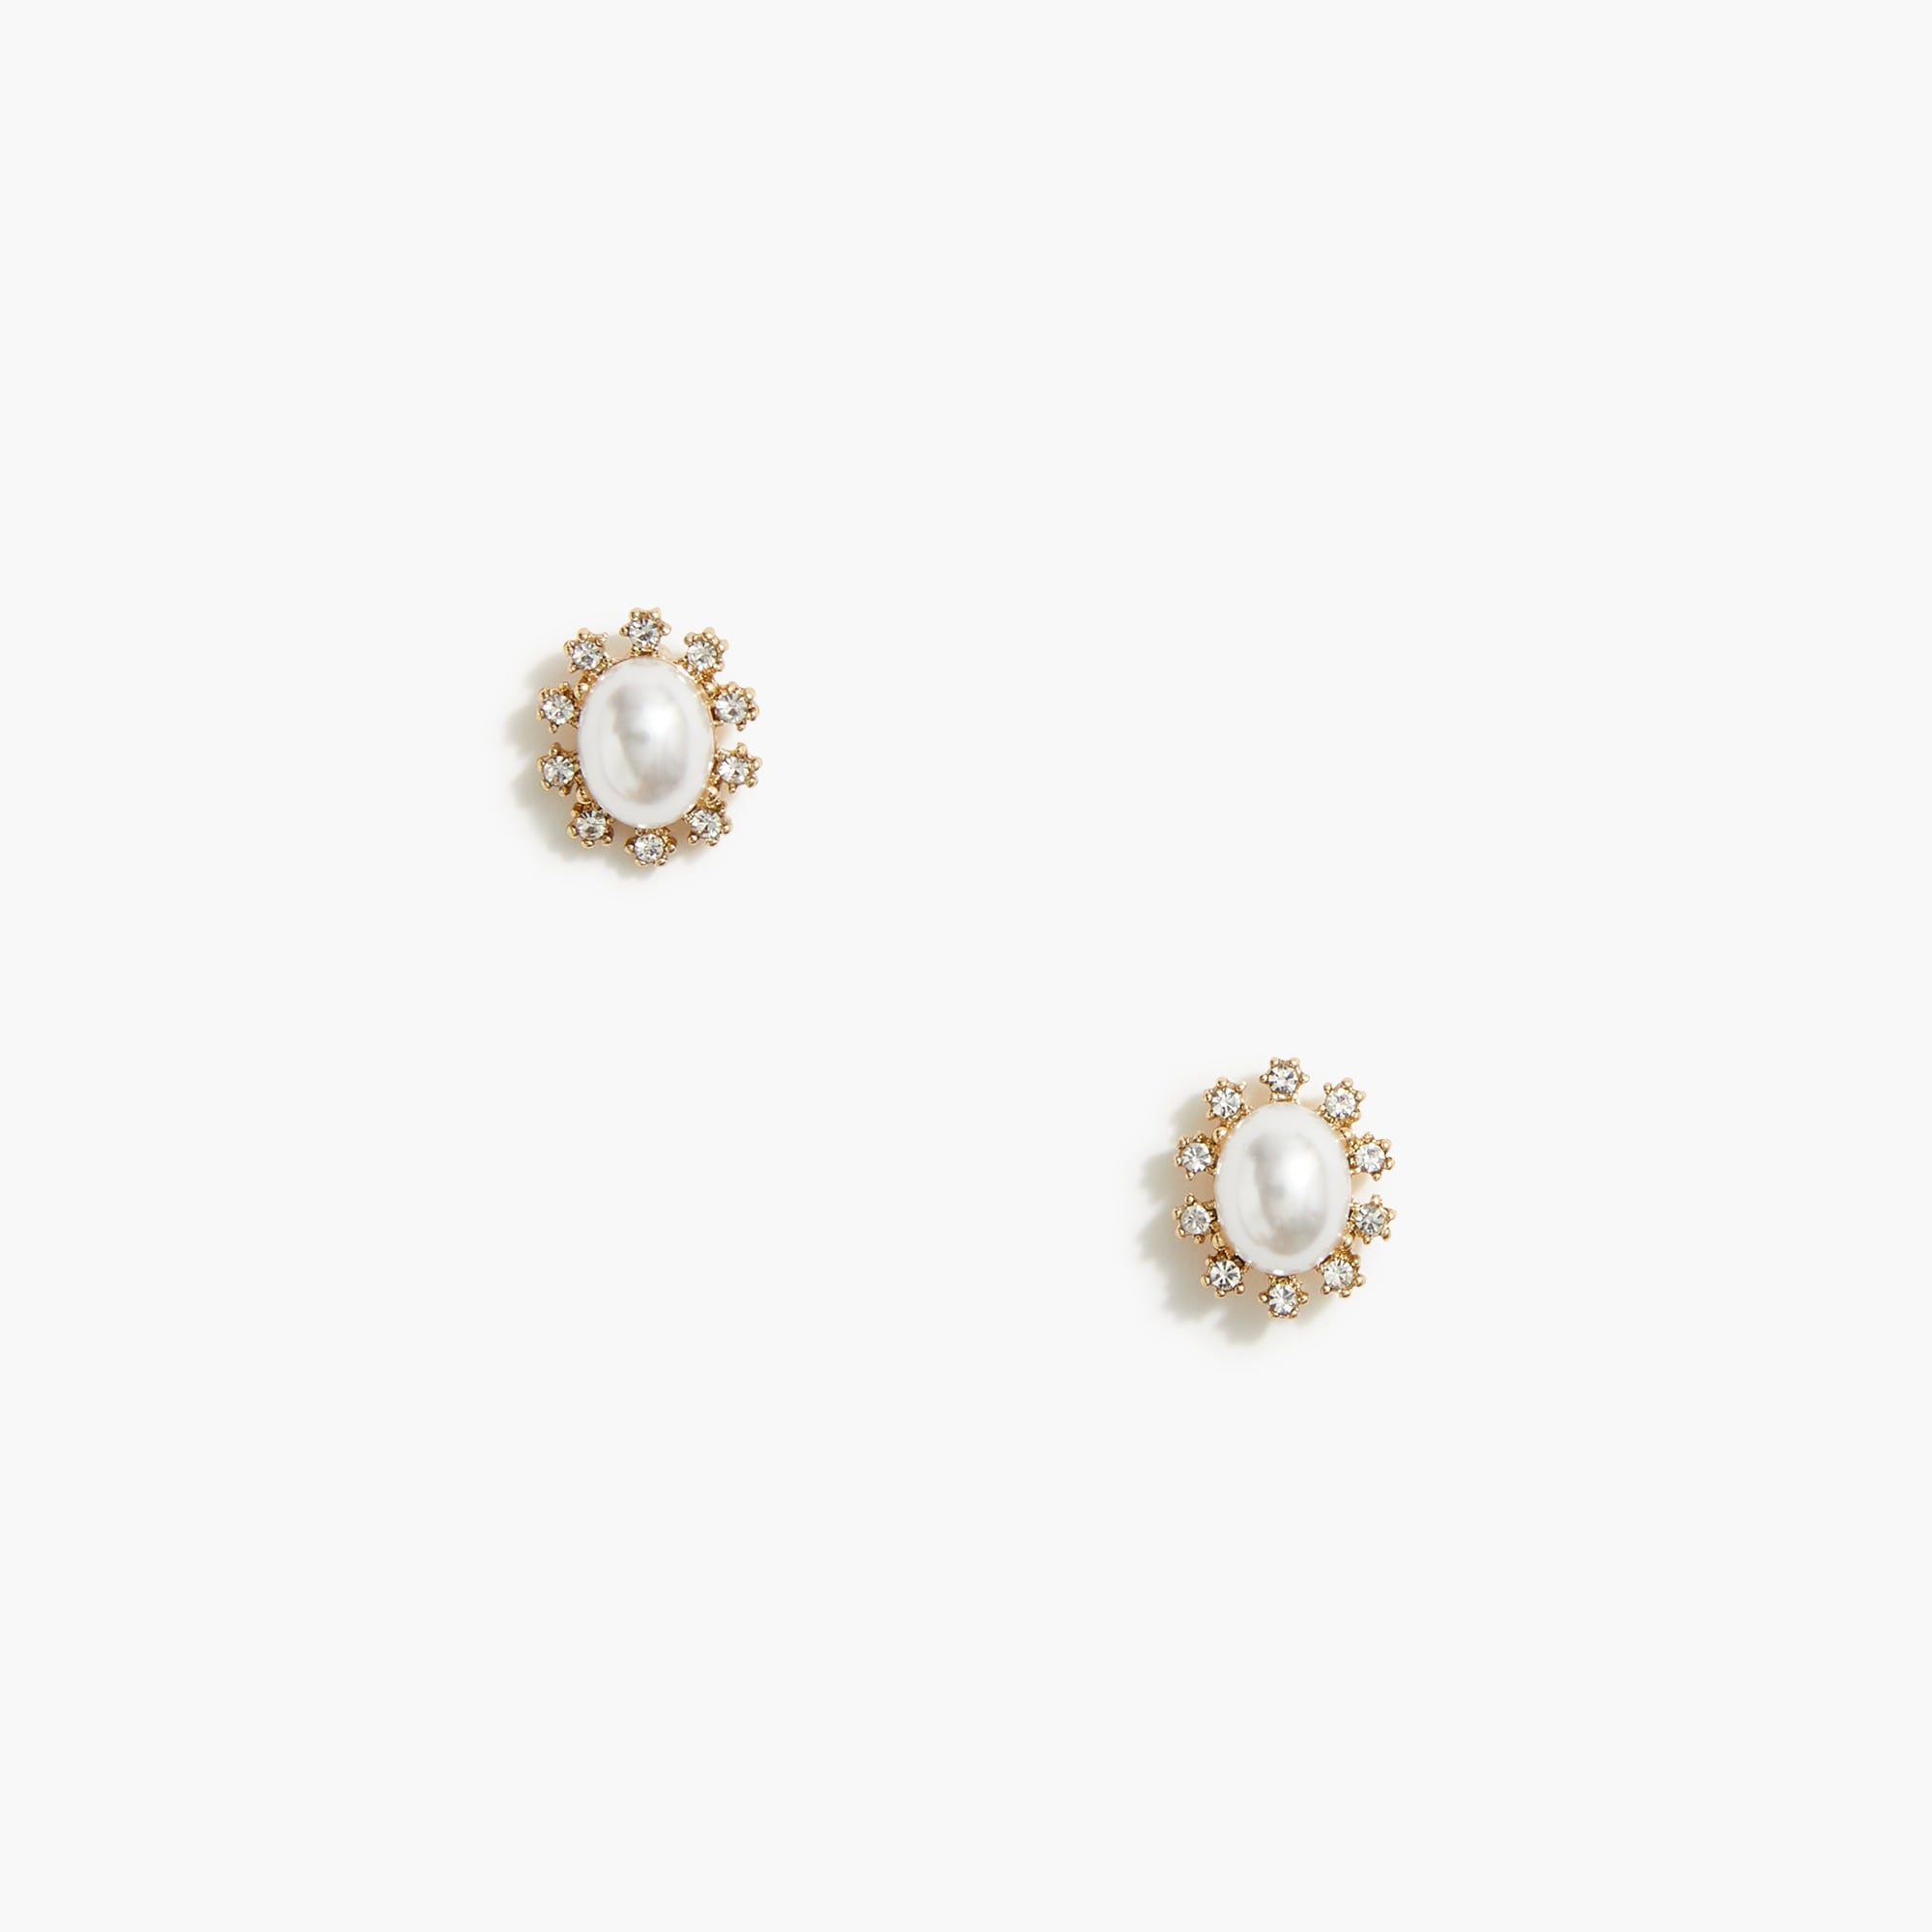  Crystal Pearl Earrings